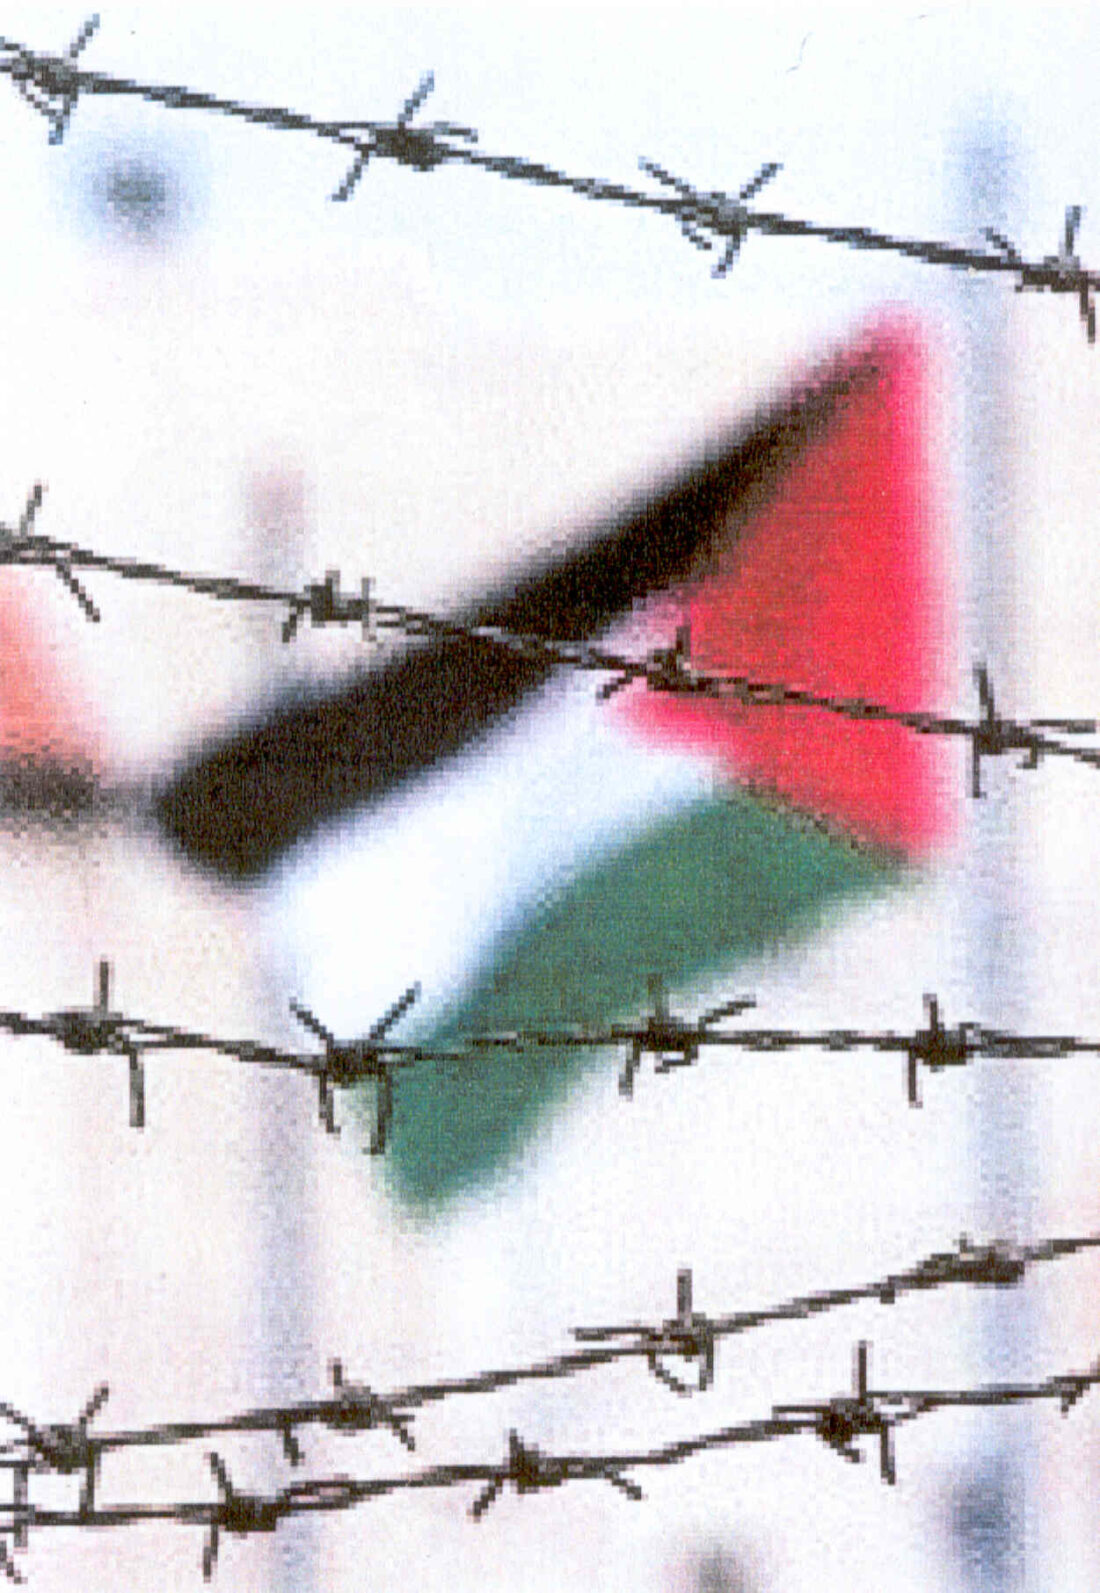 Aturem la massacre contra el poble Palestí. Comunicat de la CGT de Catalunya